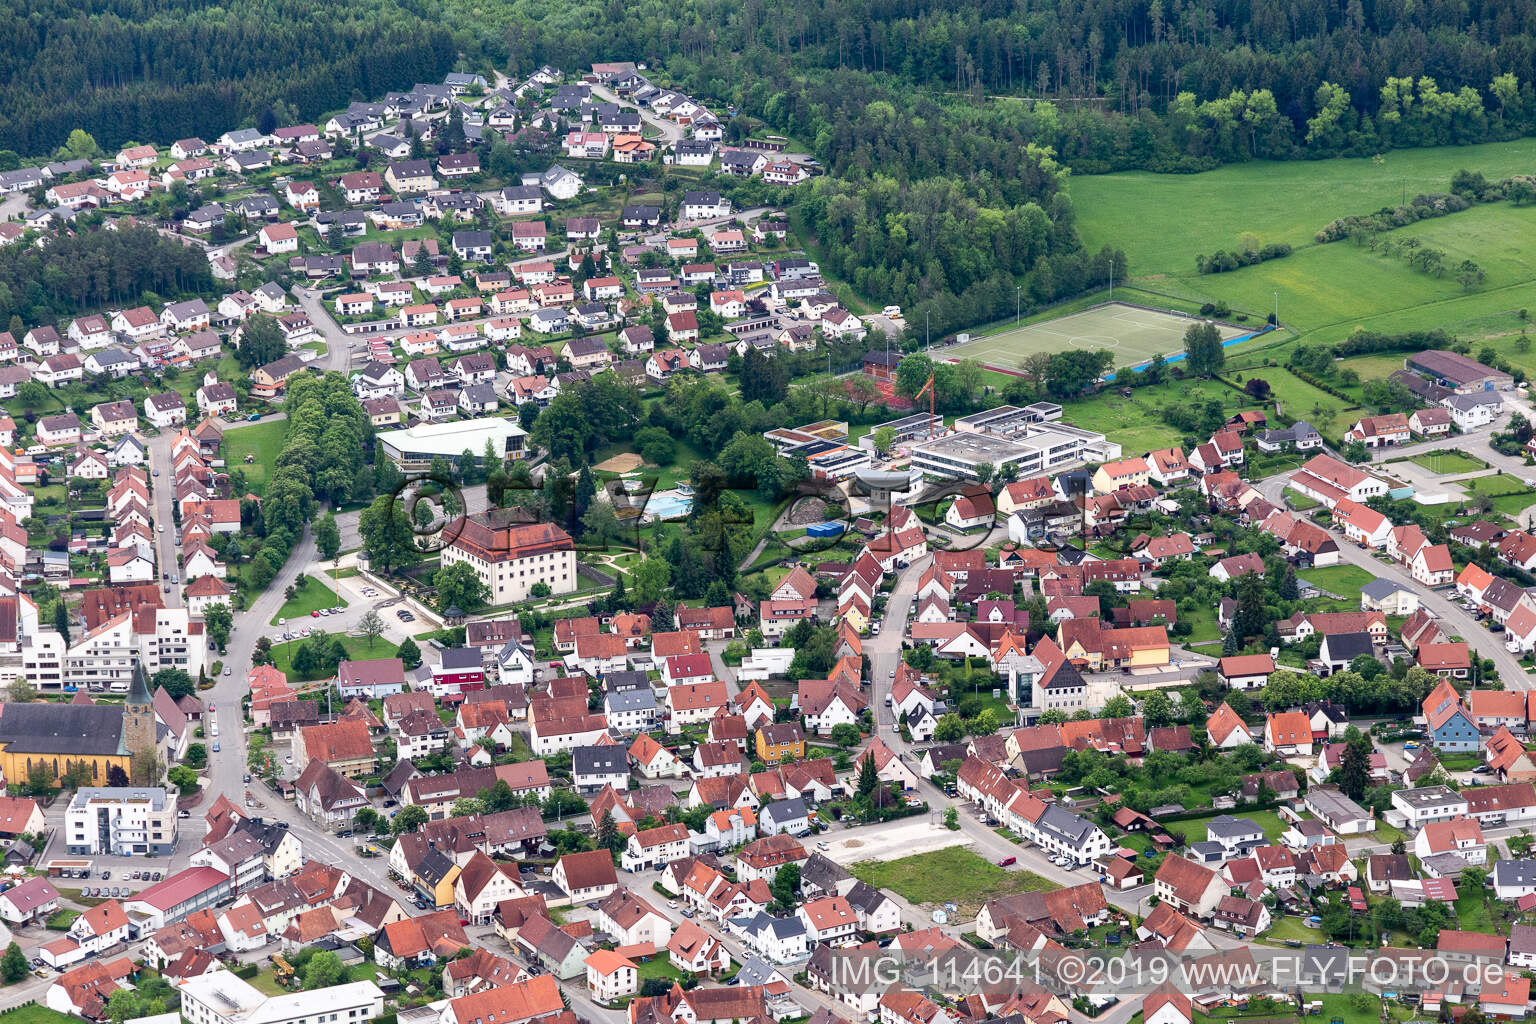 Geislingen im Bundesland Baden-Württemberg, Deutschland von oben gesehen